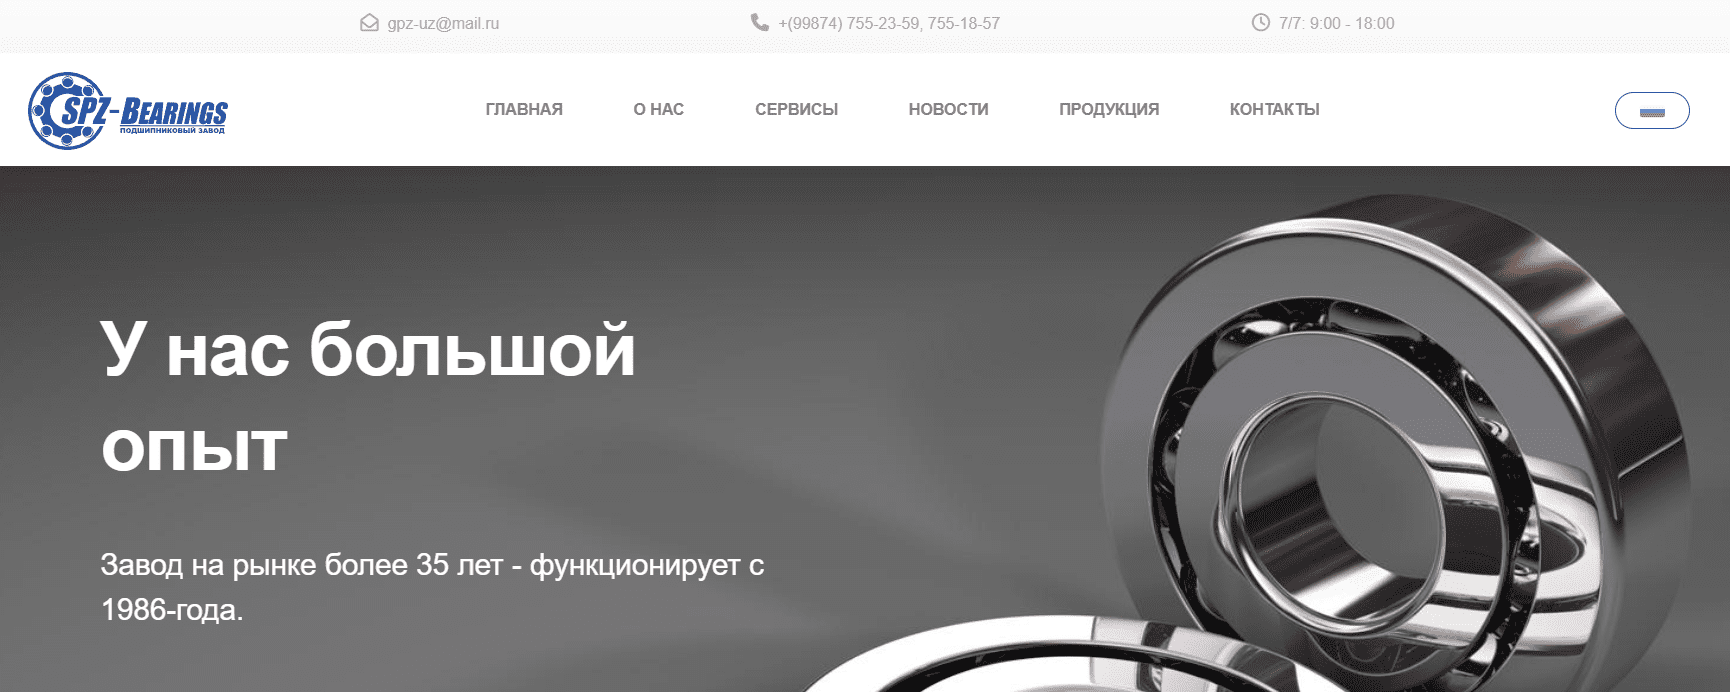 Ахунбабаевский подшипниковый завод-27 (spz-bearings.uz) - официальный сайт